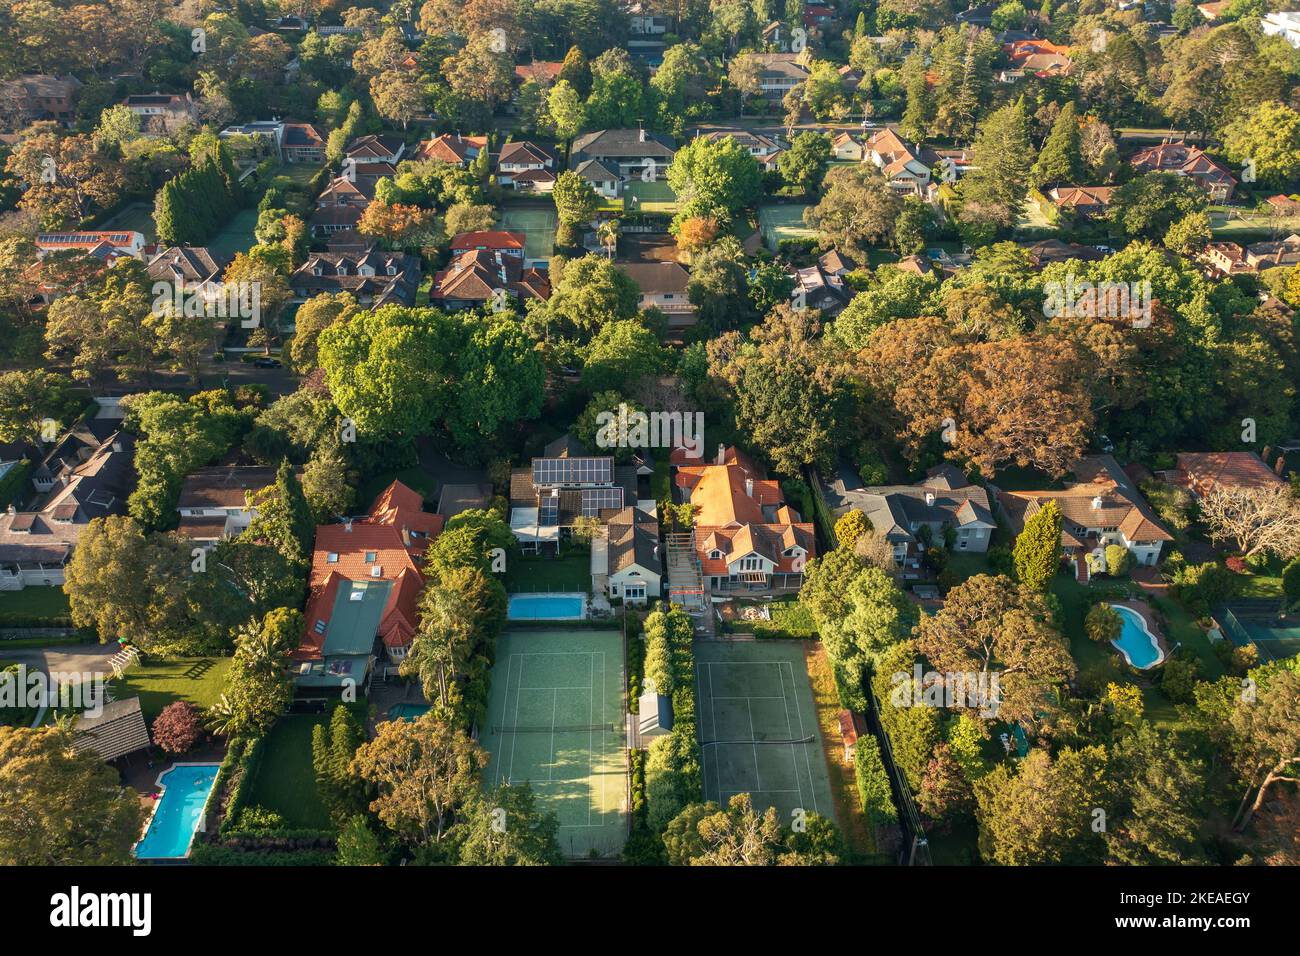 Vista aerea di case di lusso con giardini privati, piscine e campi da tennis sulla rigogliosa North Shore di Sydney. Foto Stock